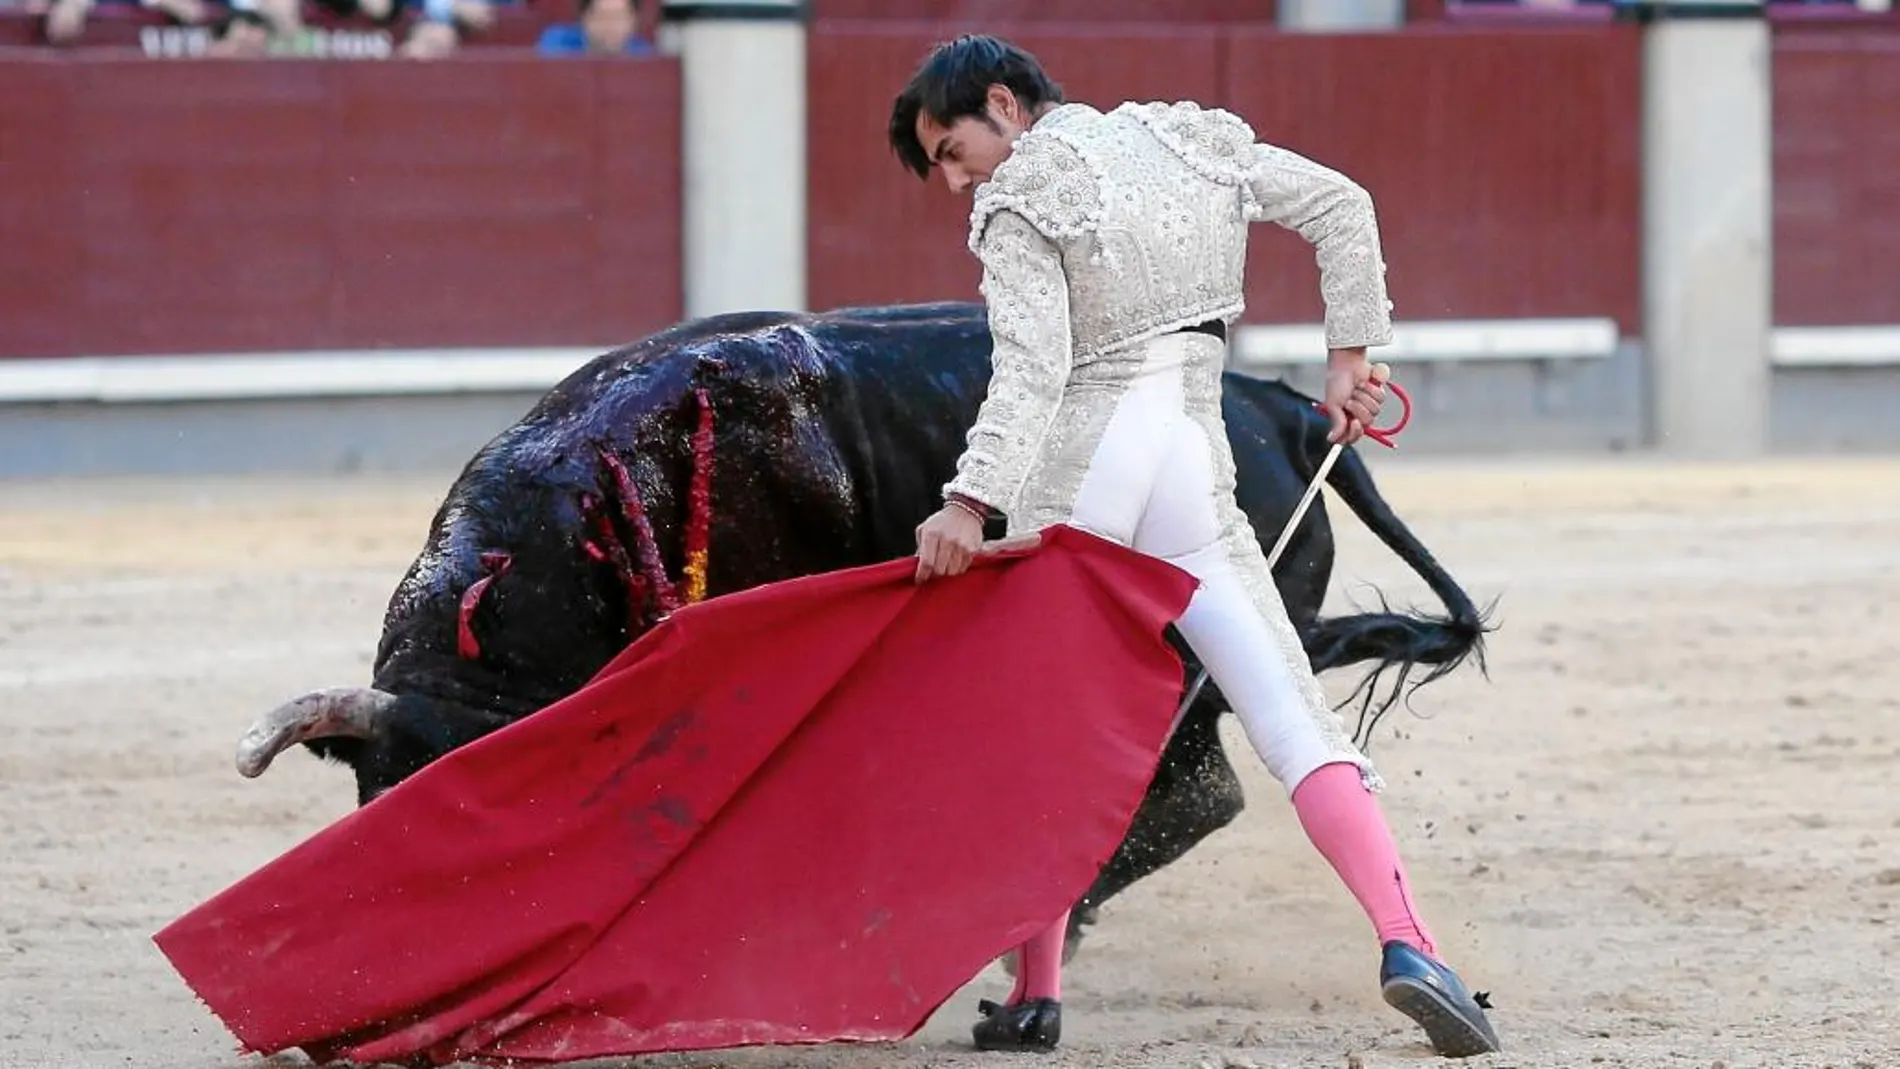 Gómez Del Pilar toreando con la muleta, al tercero de la tarde, al que cortó una oreja, ayer, en Las Ventas